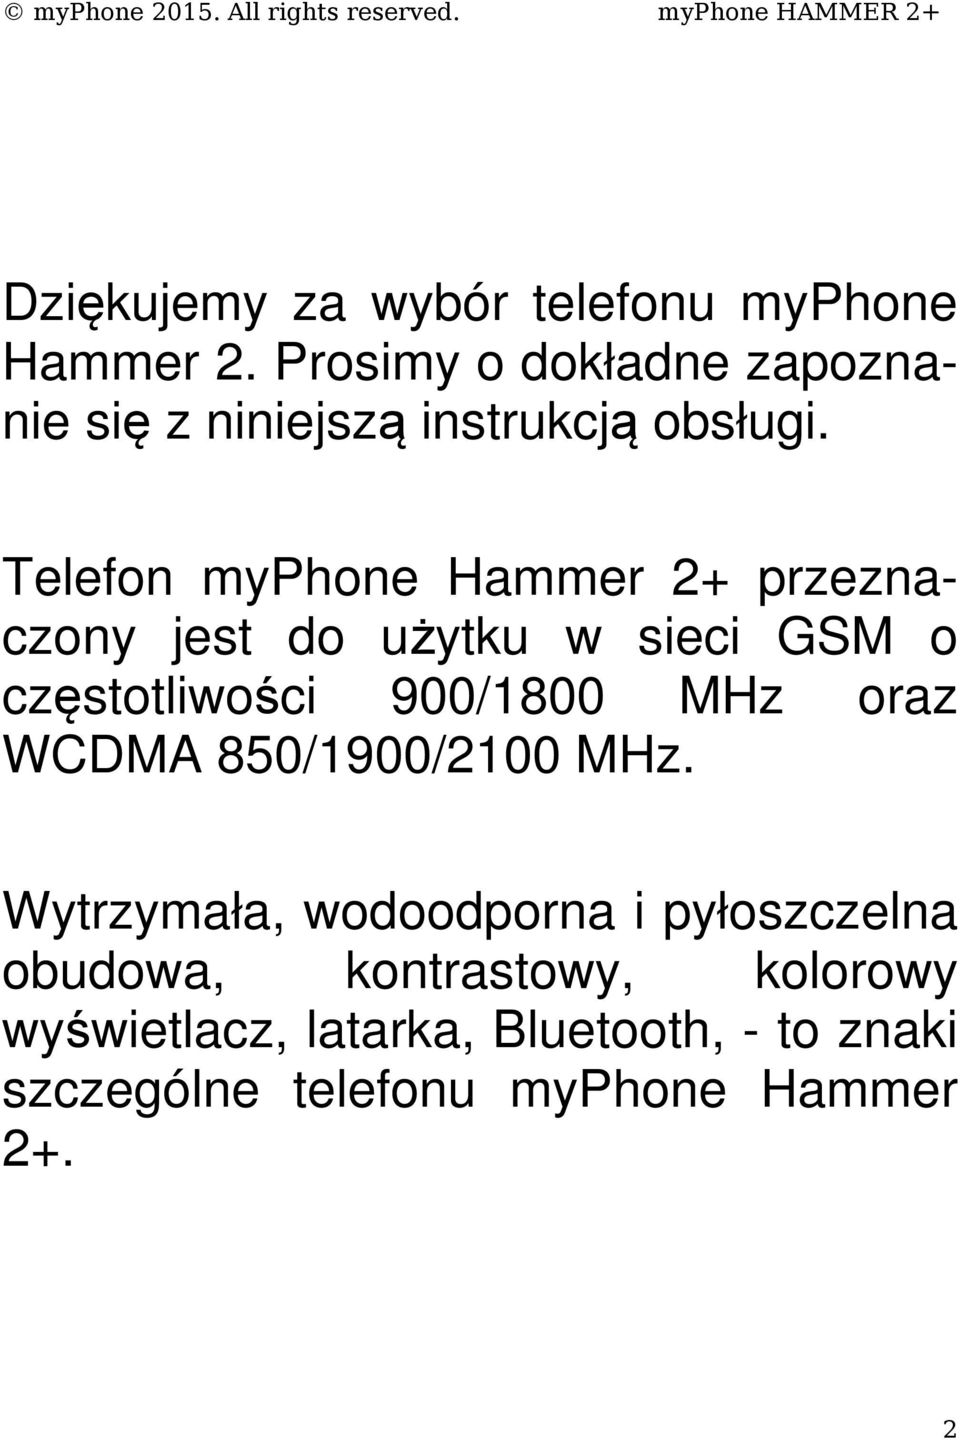 Telefon myphone Hammer 2+ przeznaczony jest do użytku w sieci GSM o częstotliwości 900/1800 MHz